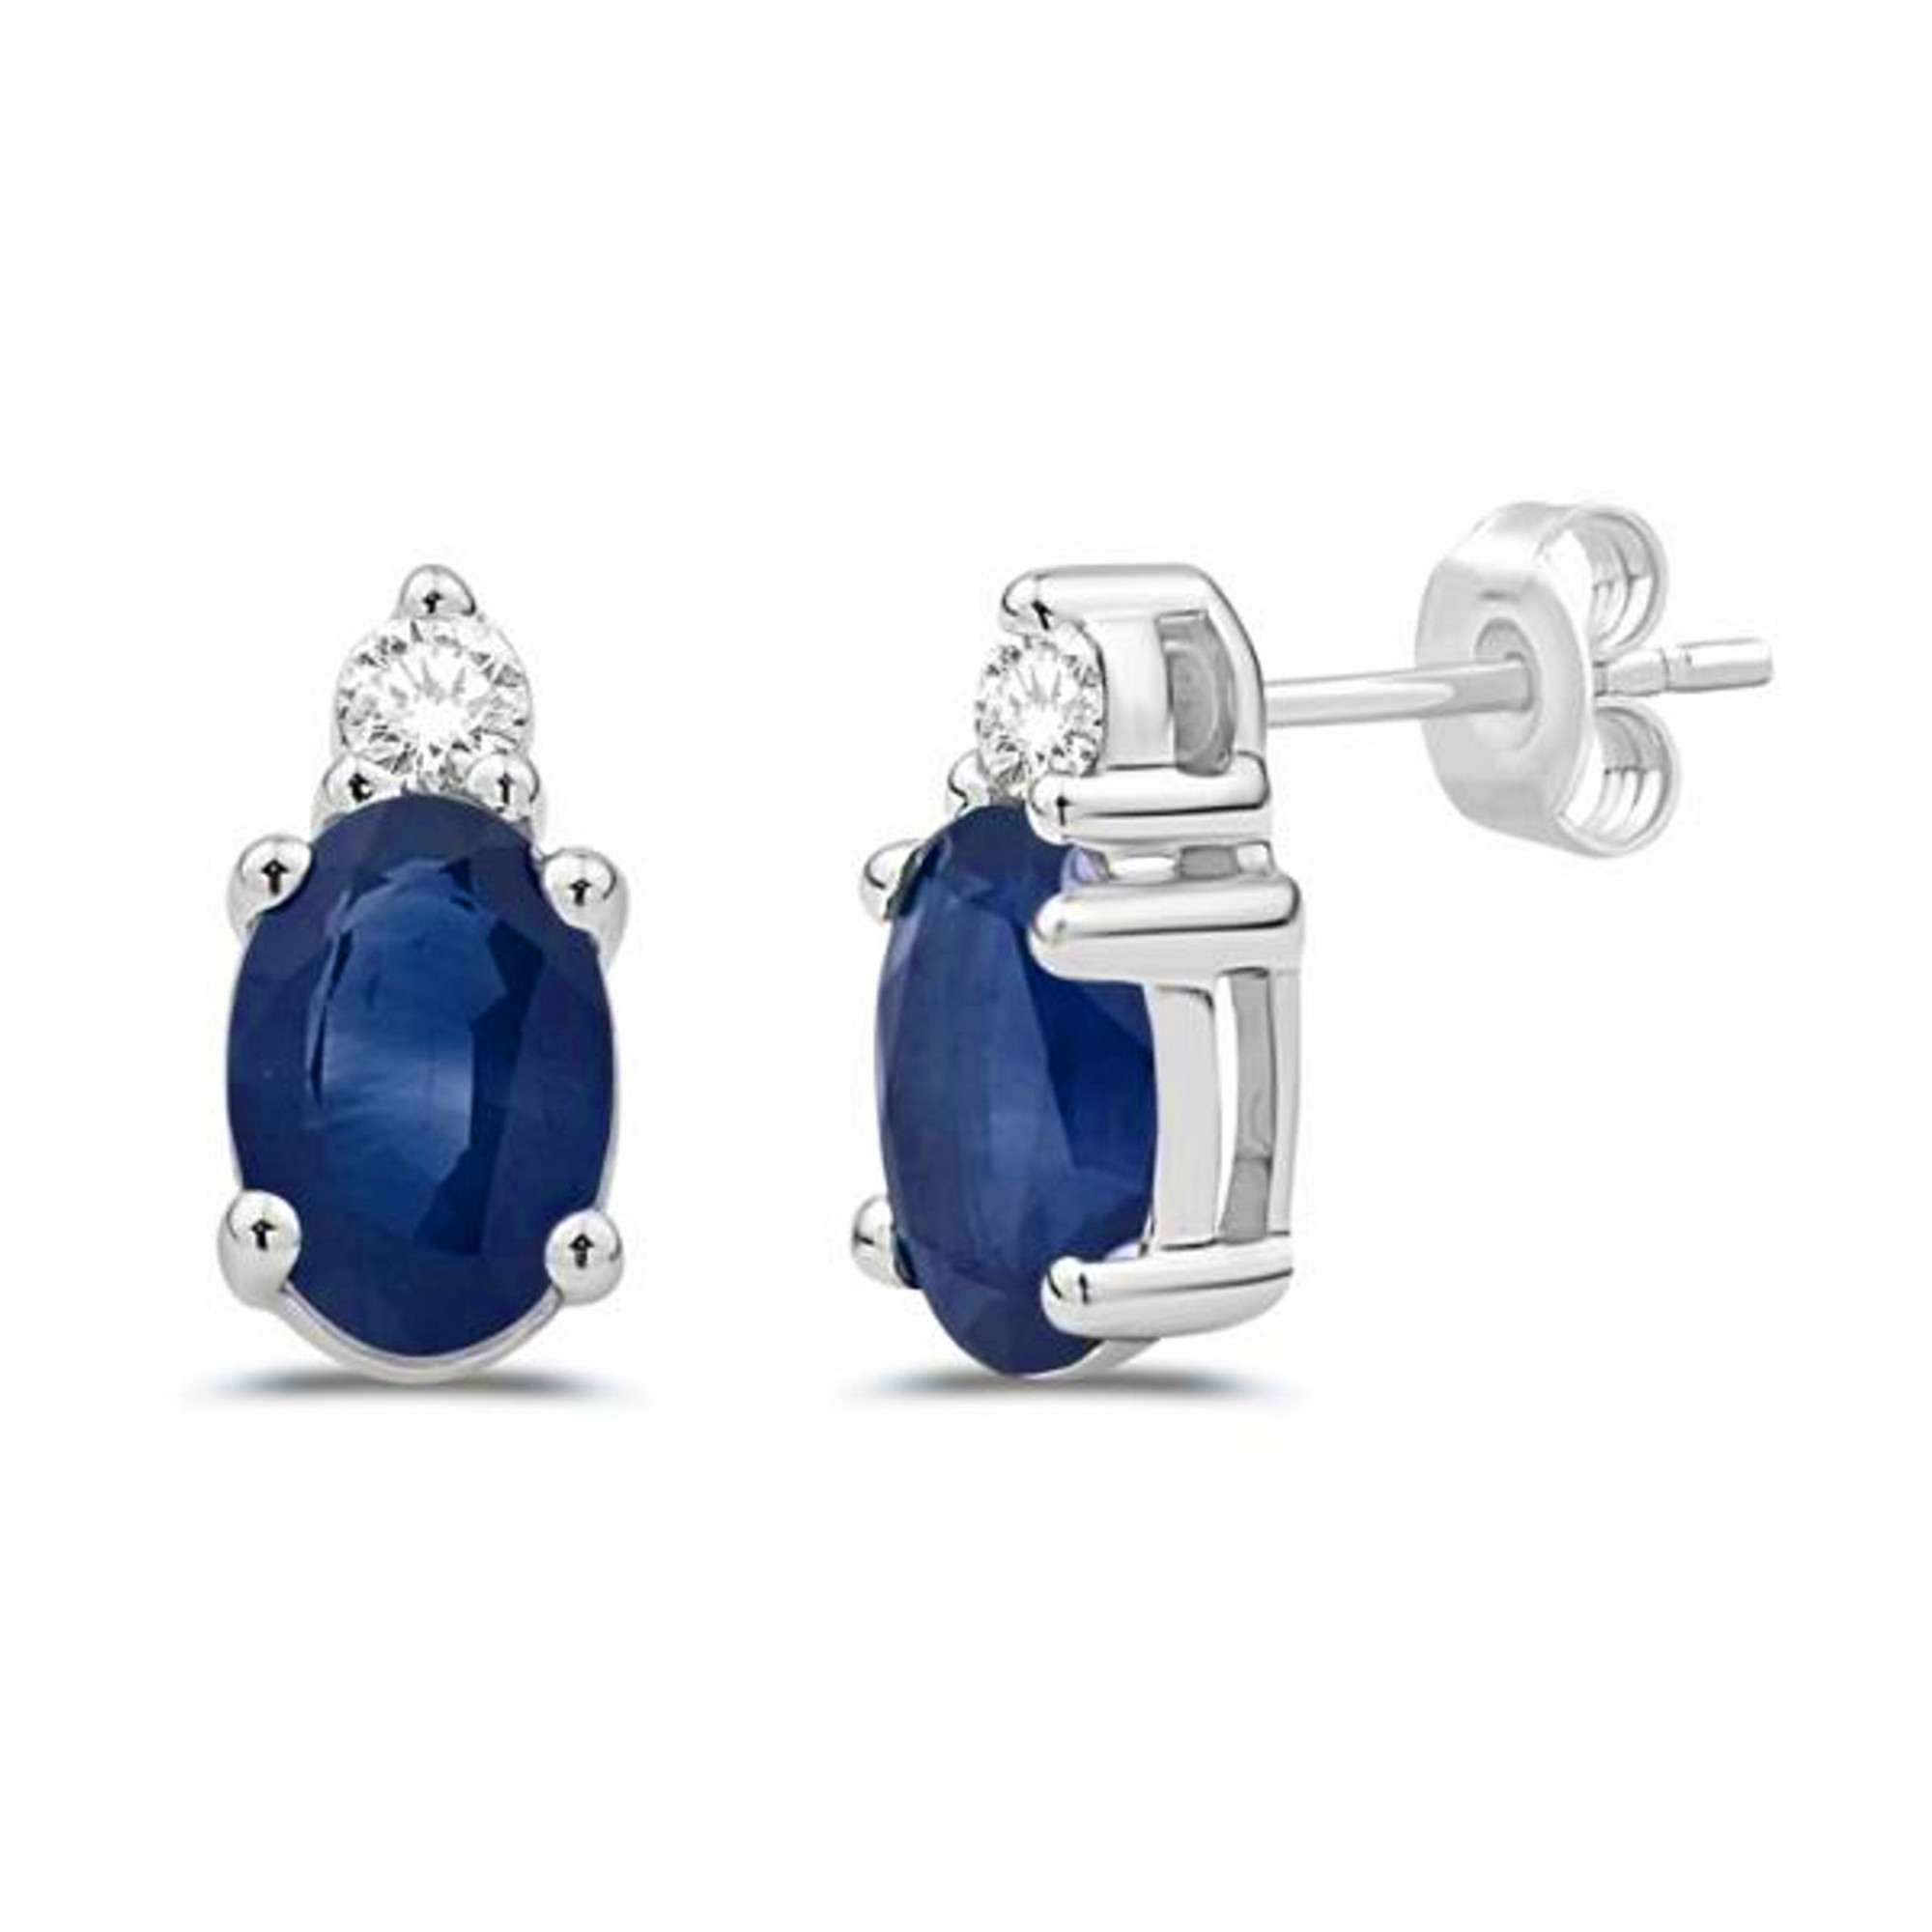 Oval Sapphire & Diamond Earrings